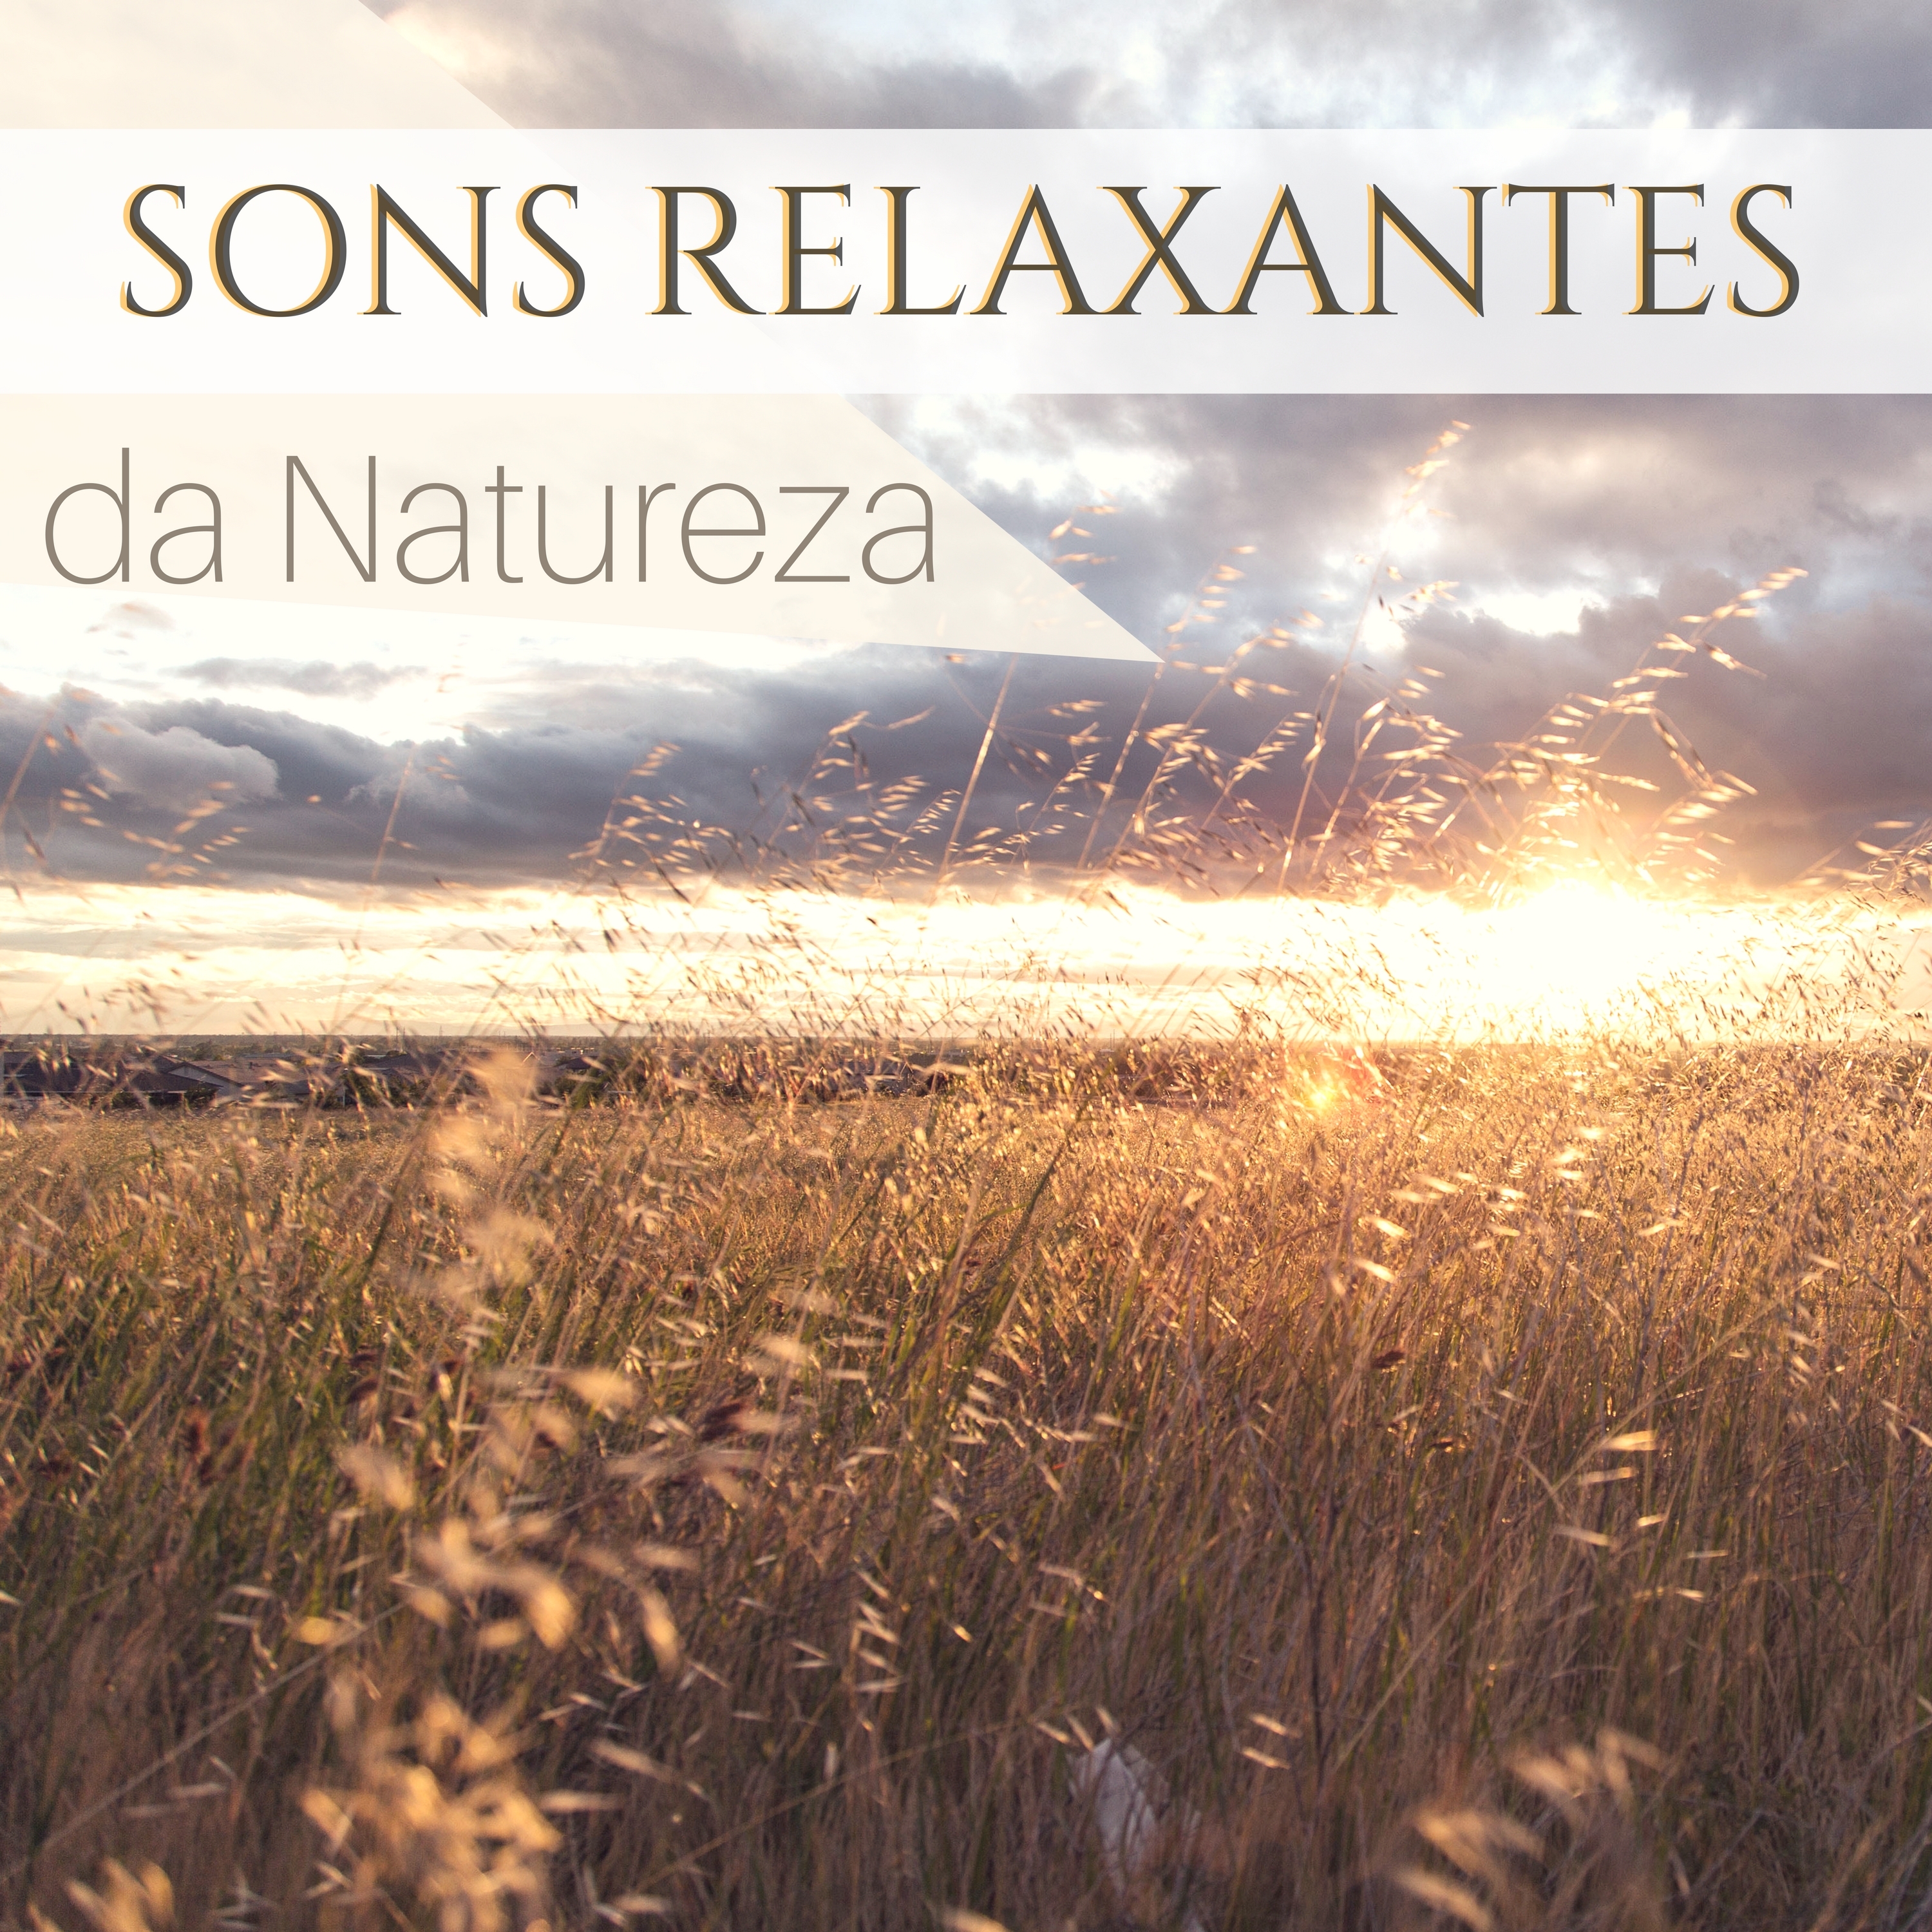 Sons Relaxantes da Natureza - Música Relaxante para o Sono das Crianças